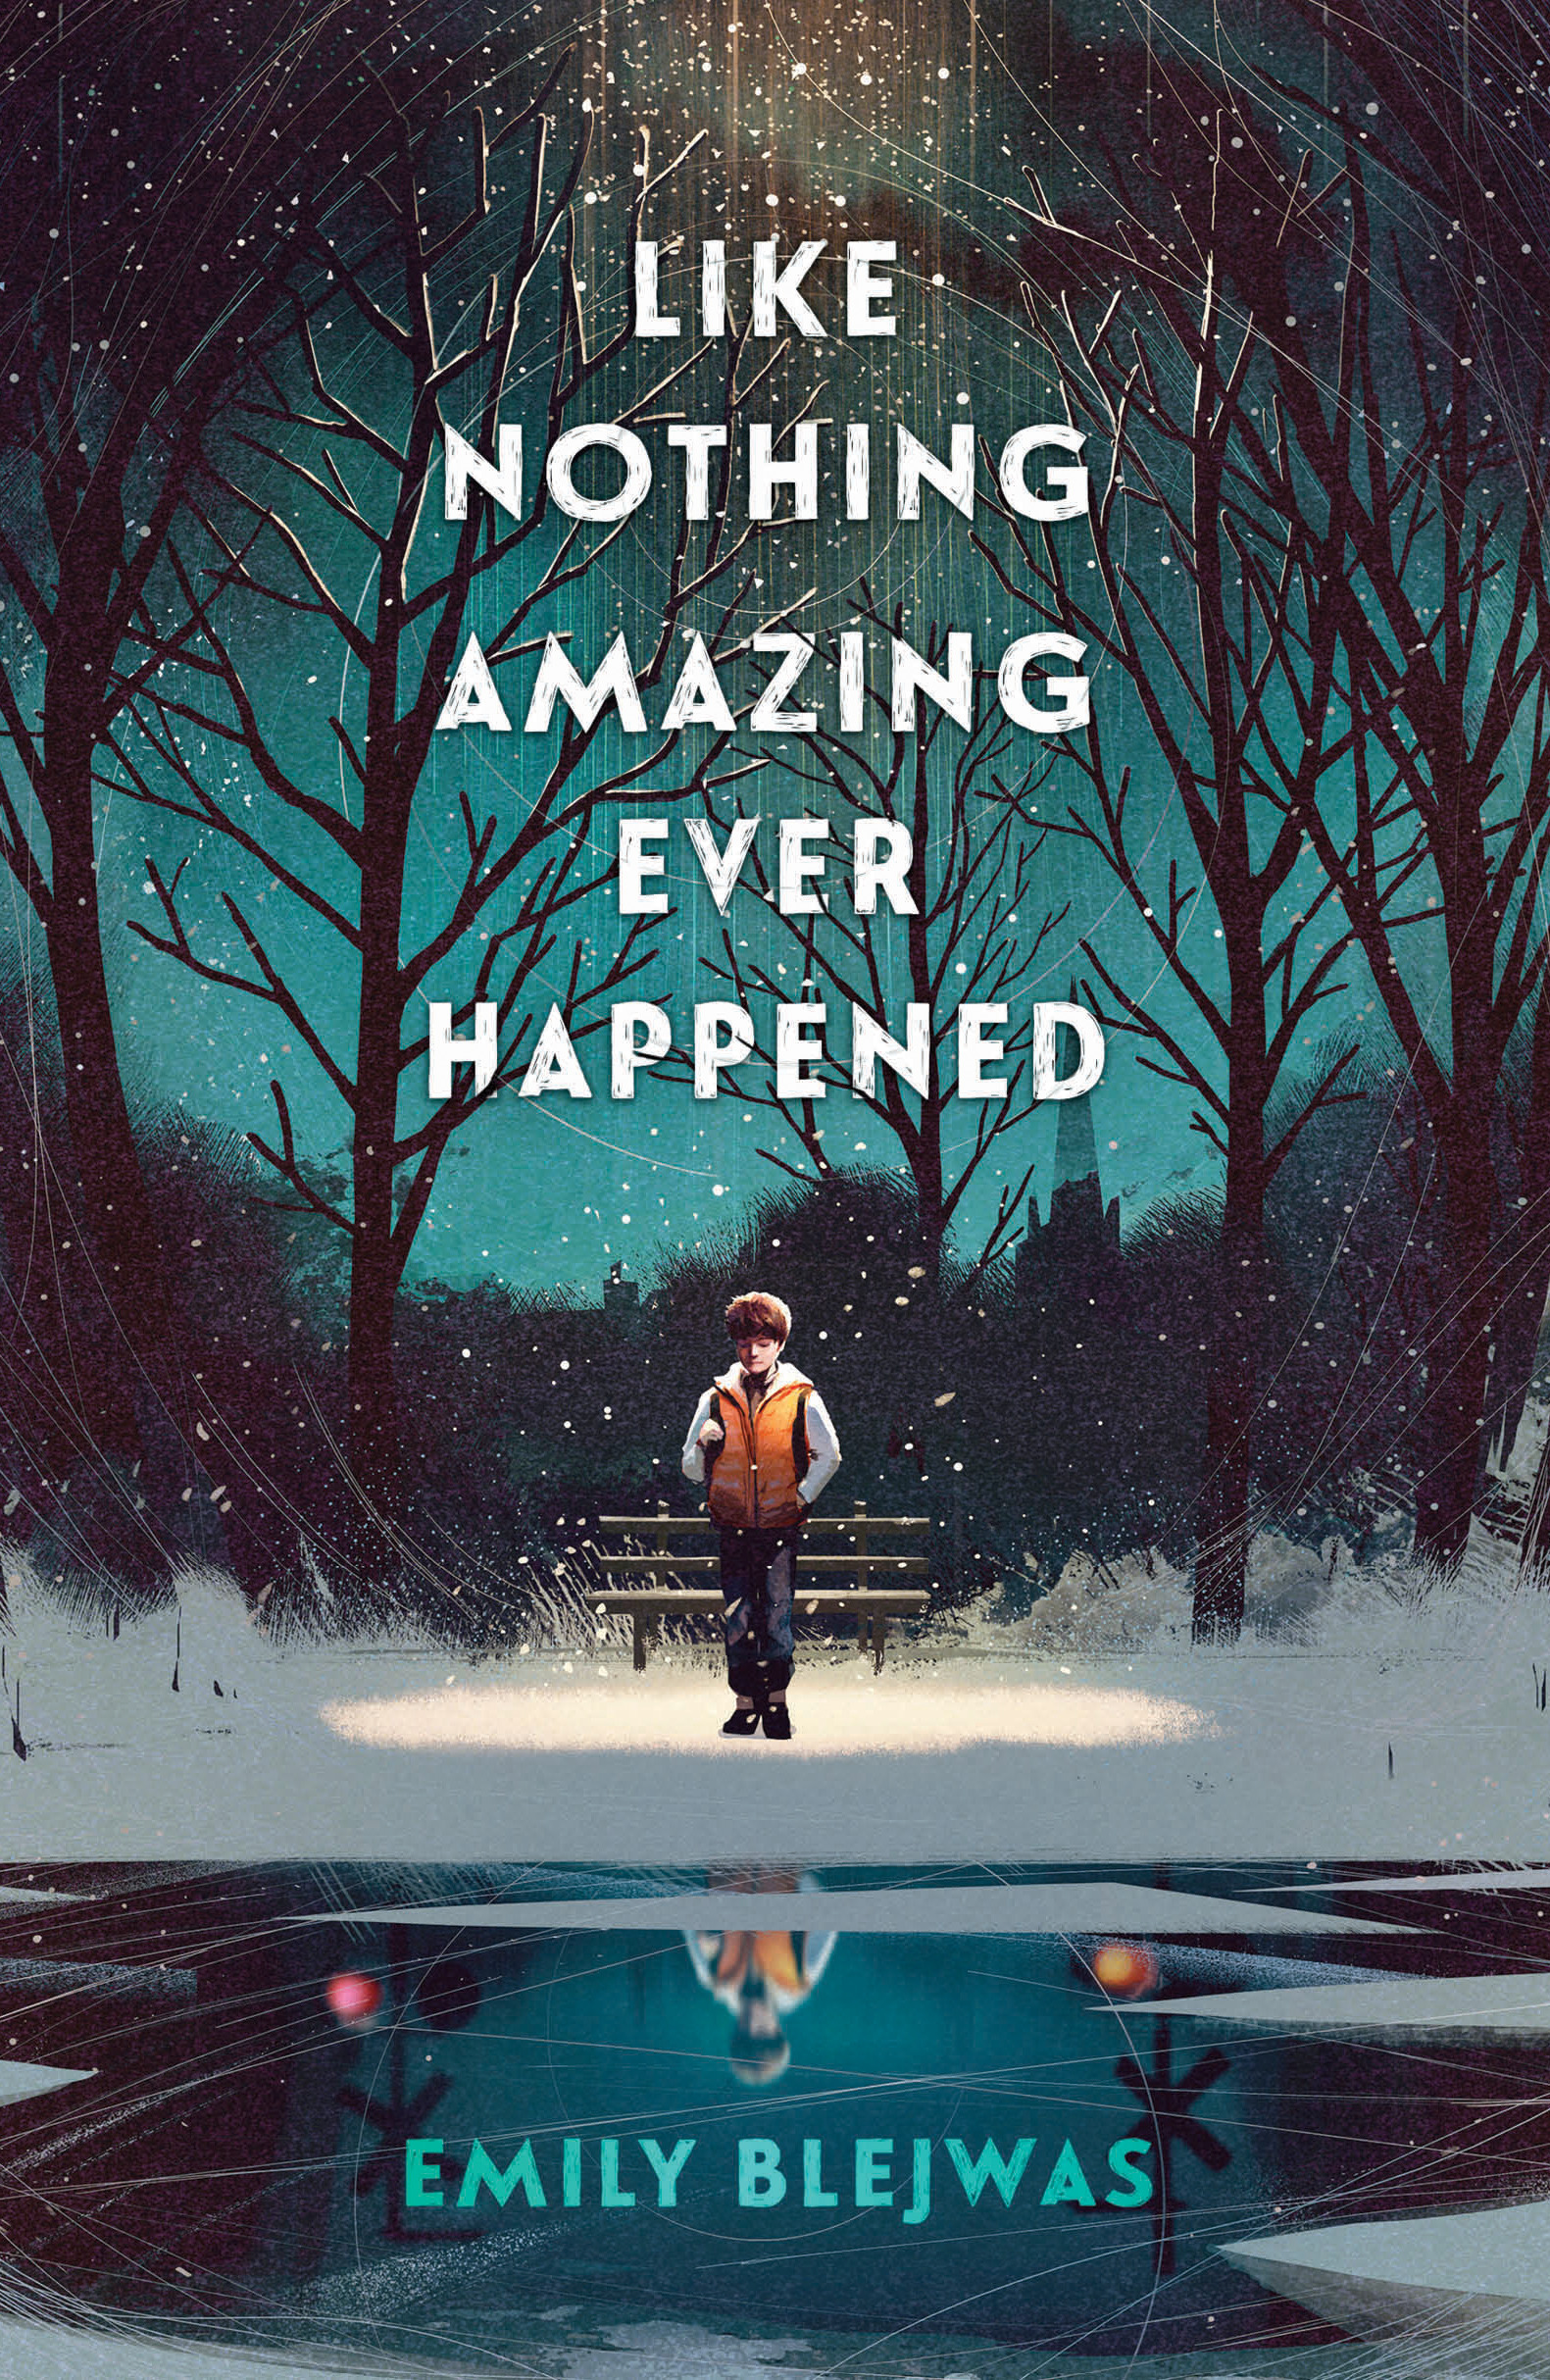 Like Nothing Amazing Ever Happened | 9-12 years old